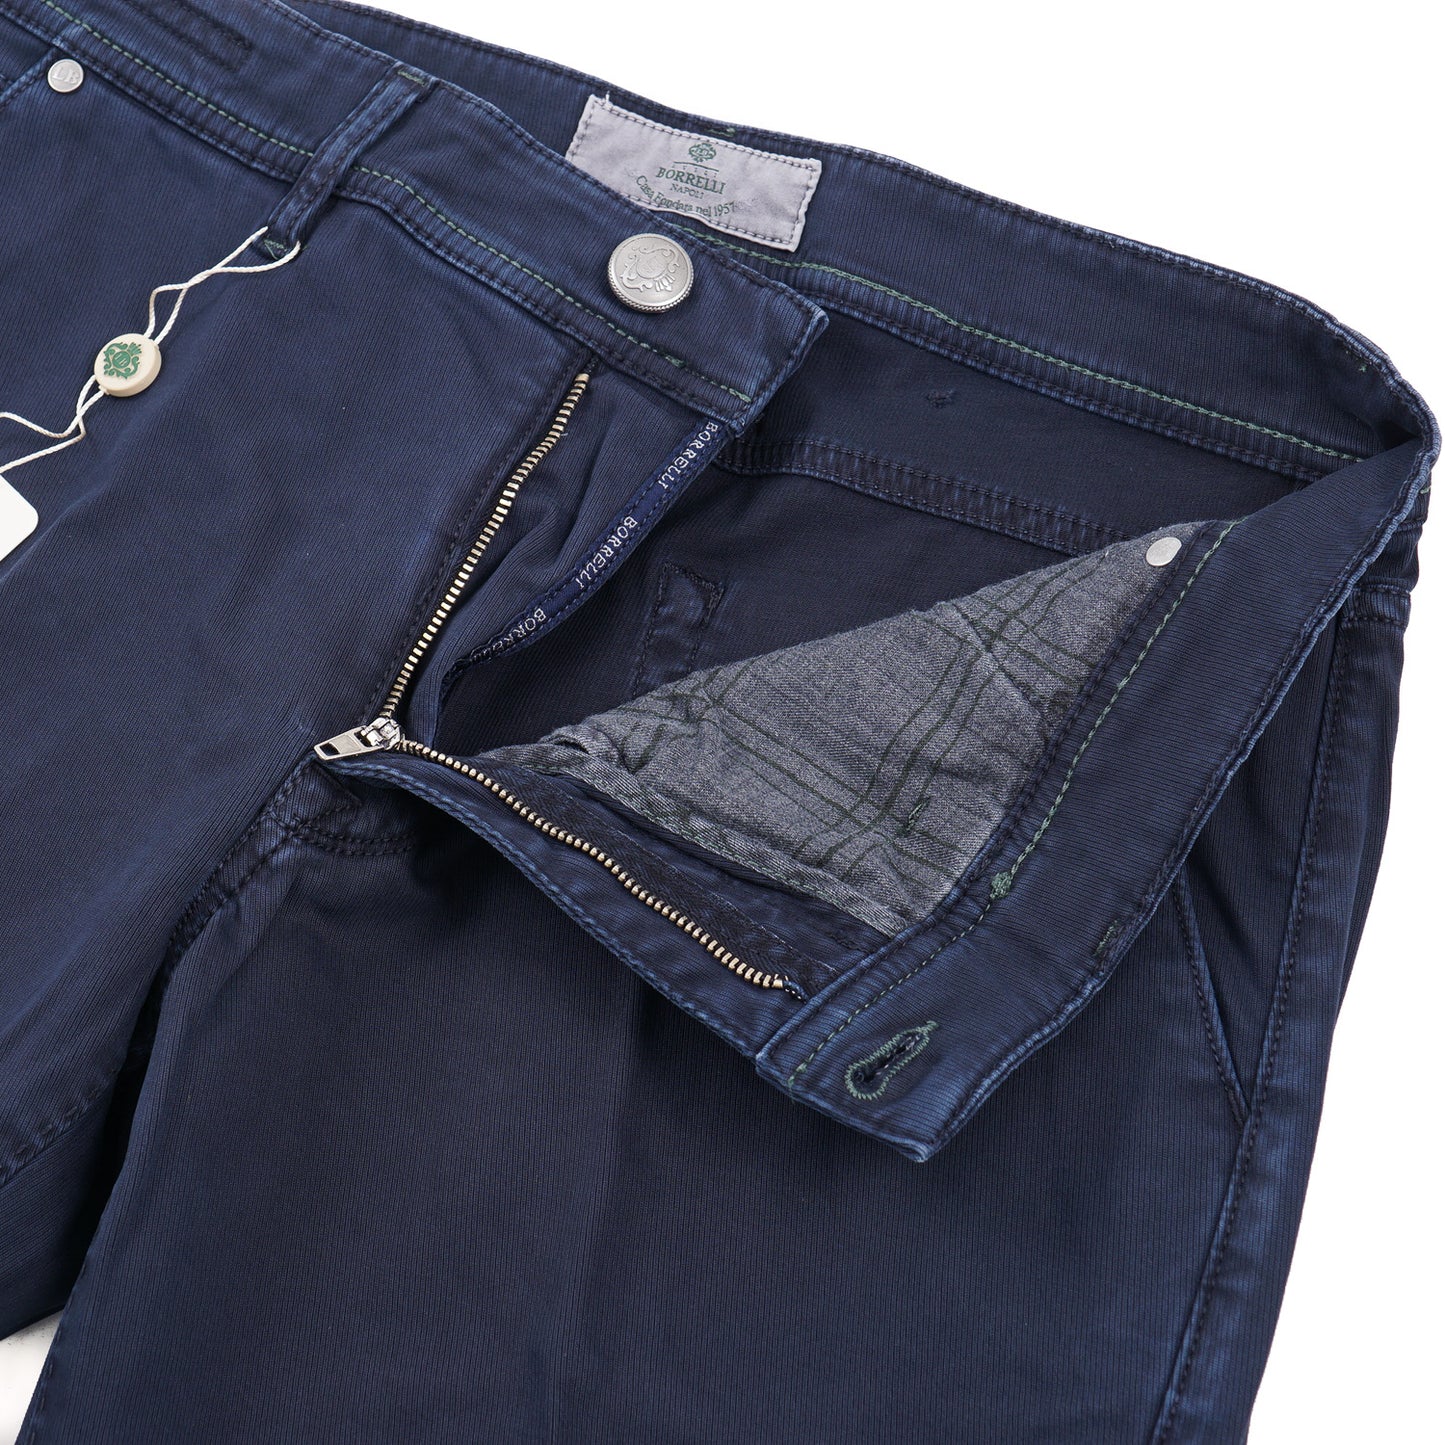 Luigi Borrelli Slim-Fit Cotton Jeans - Top Shelf Apparel